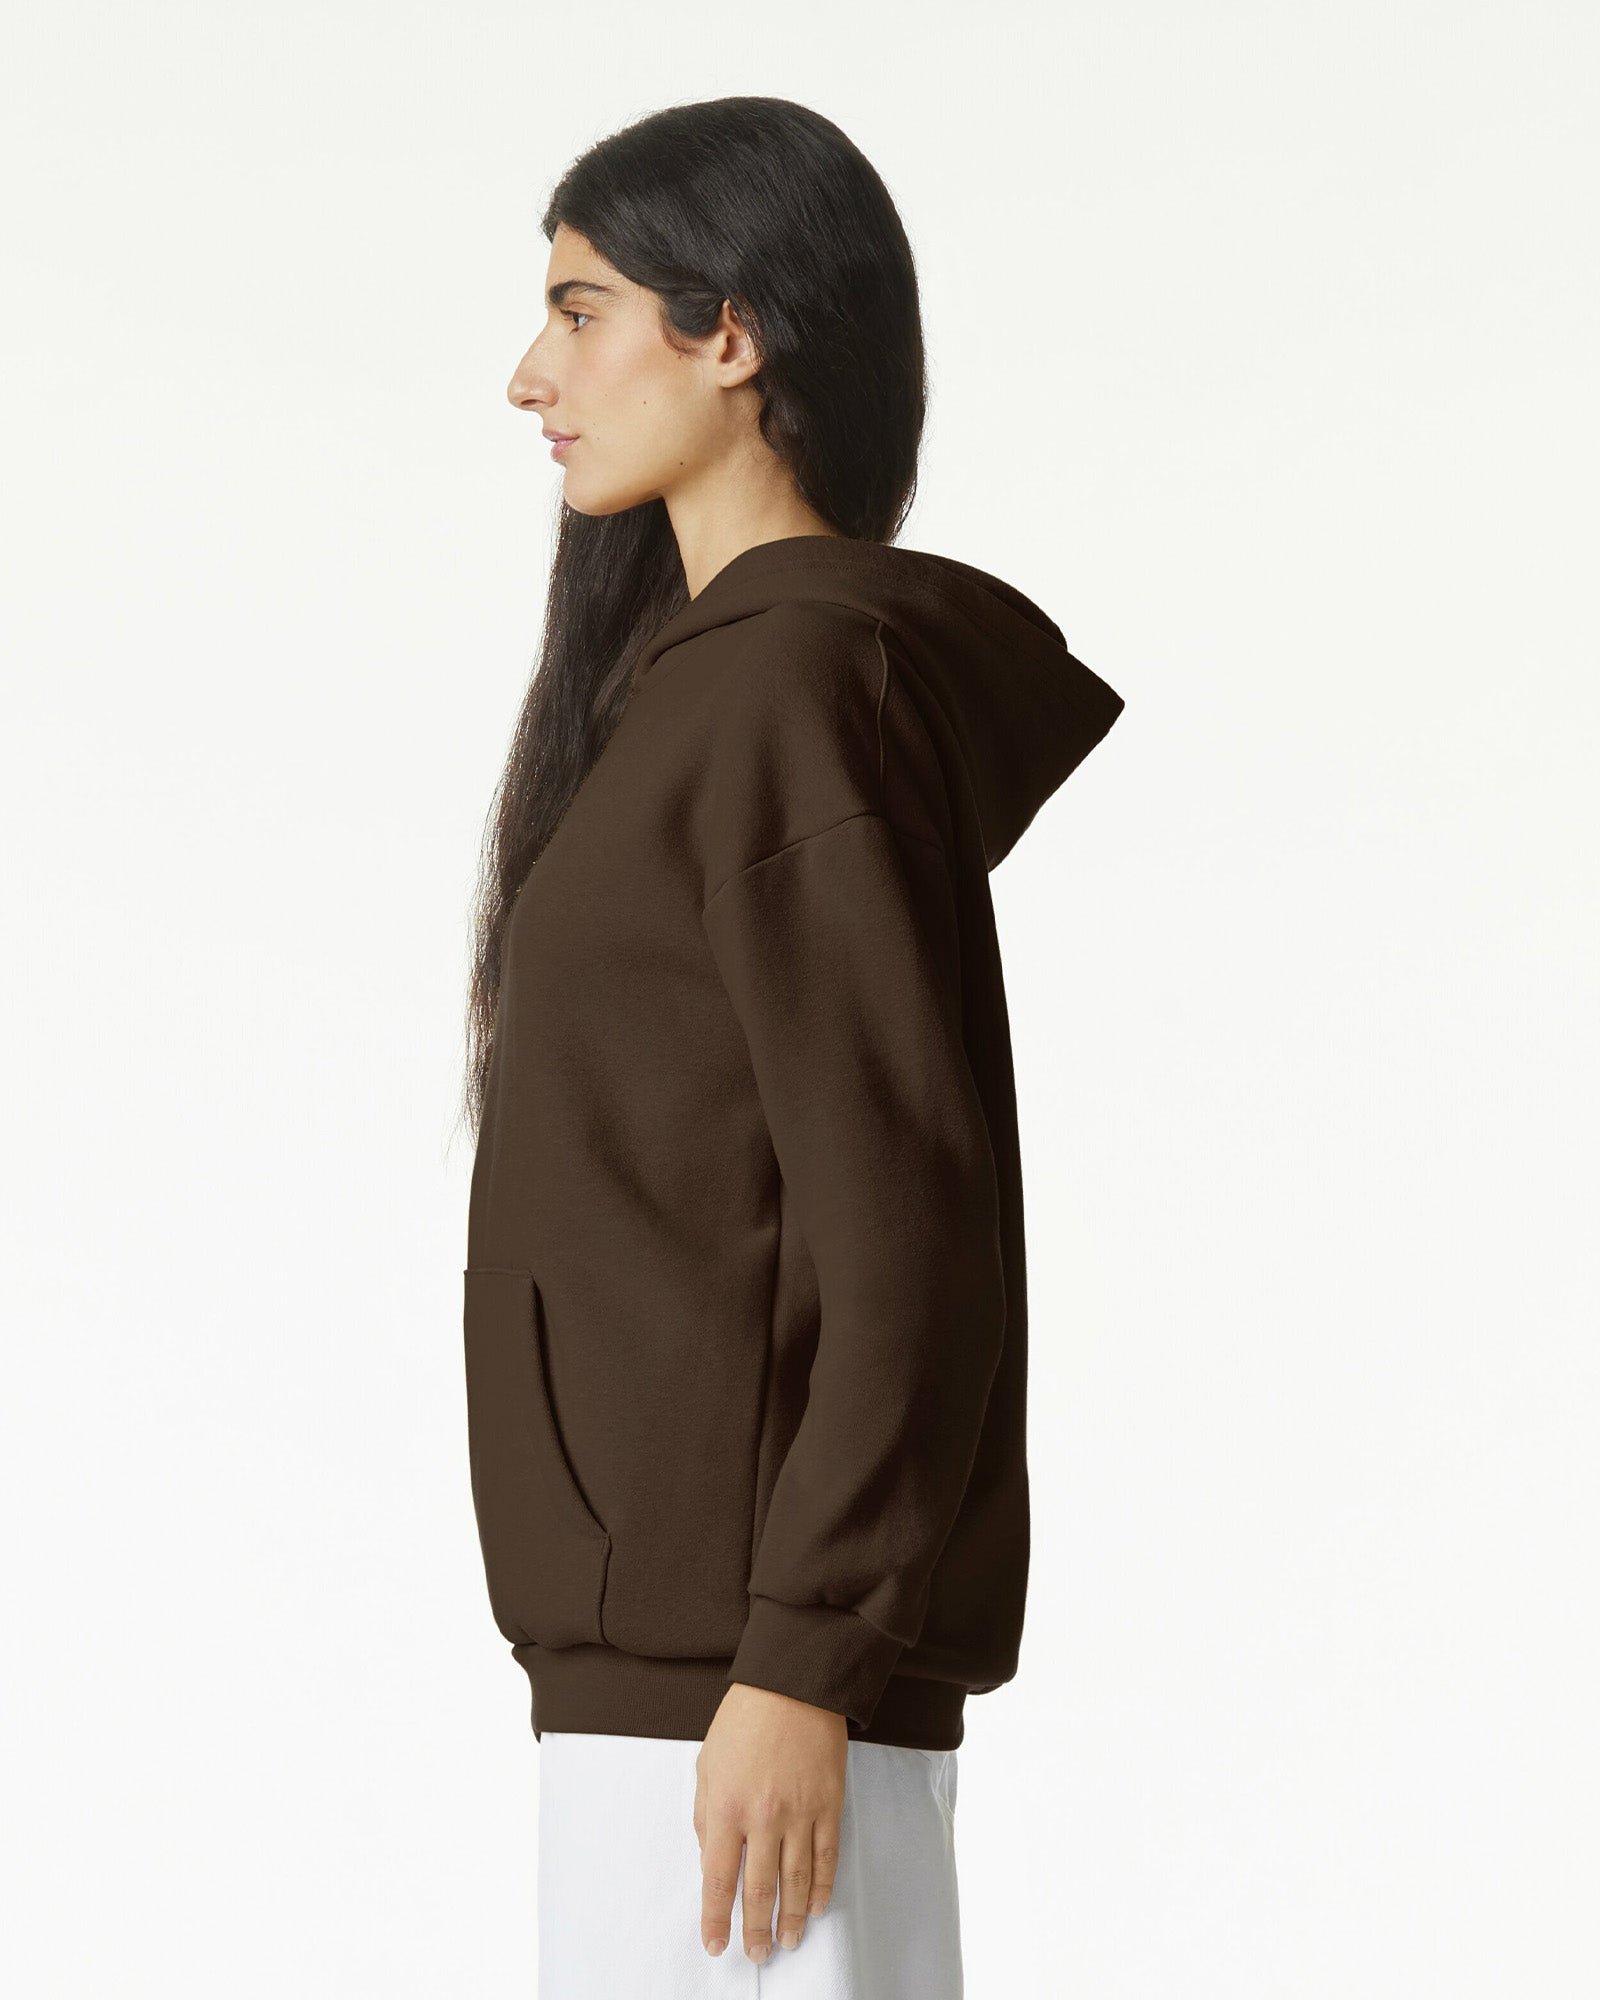 Reflex Unisex Hooded Sweatshirt - Brown